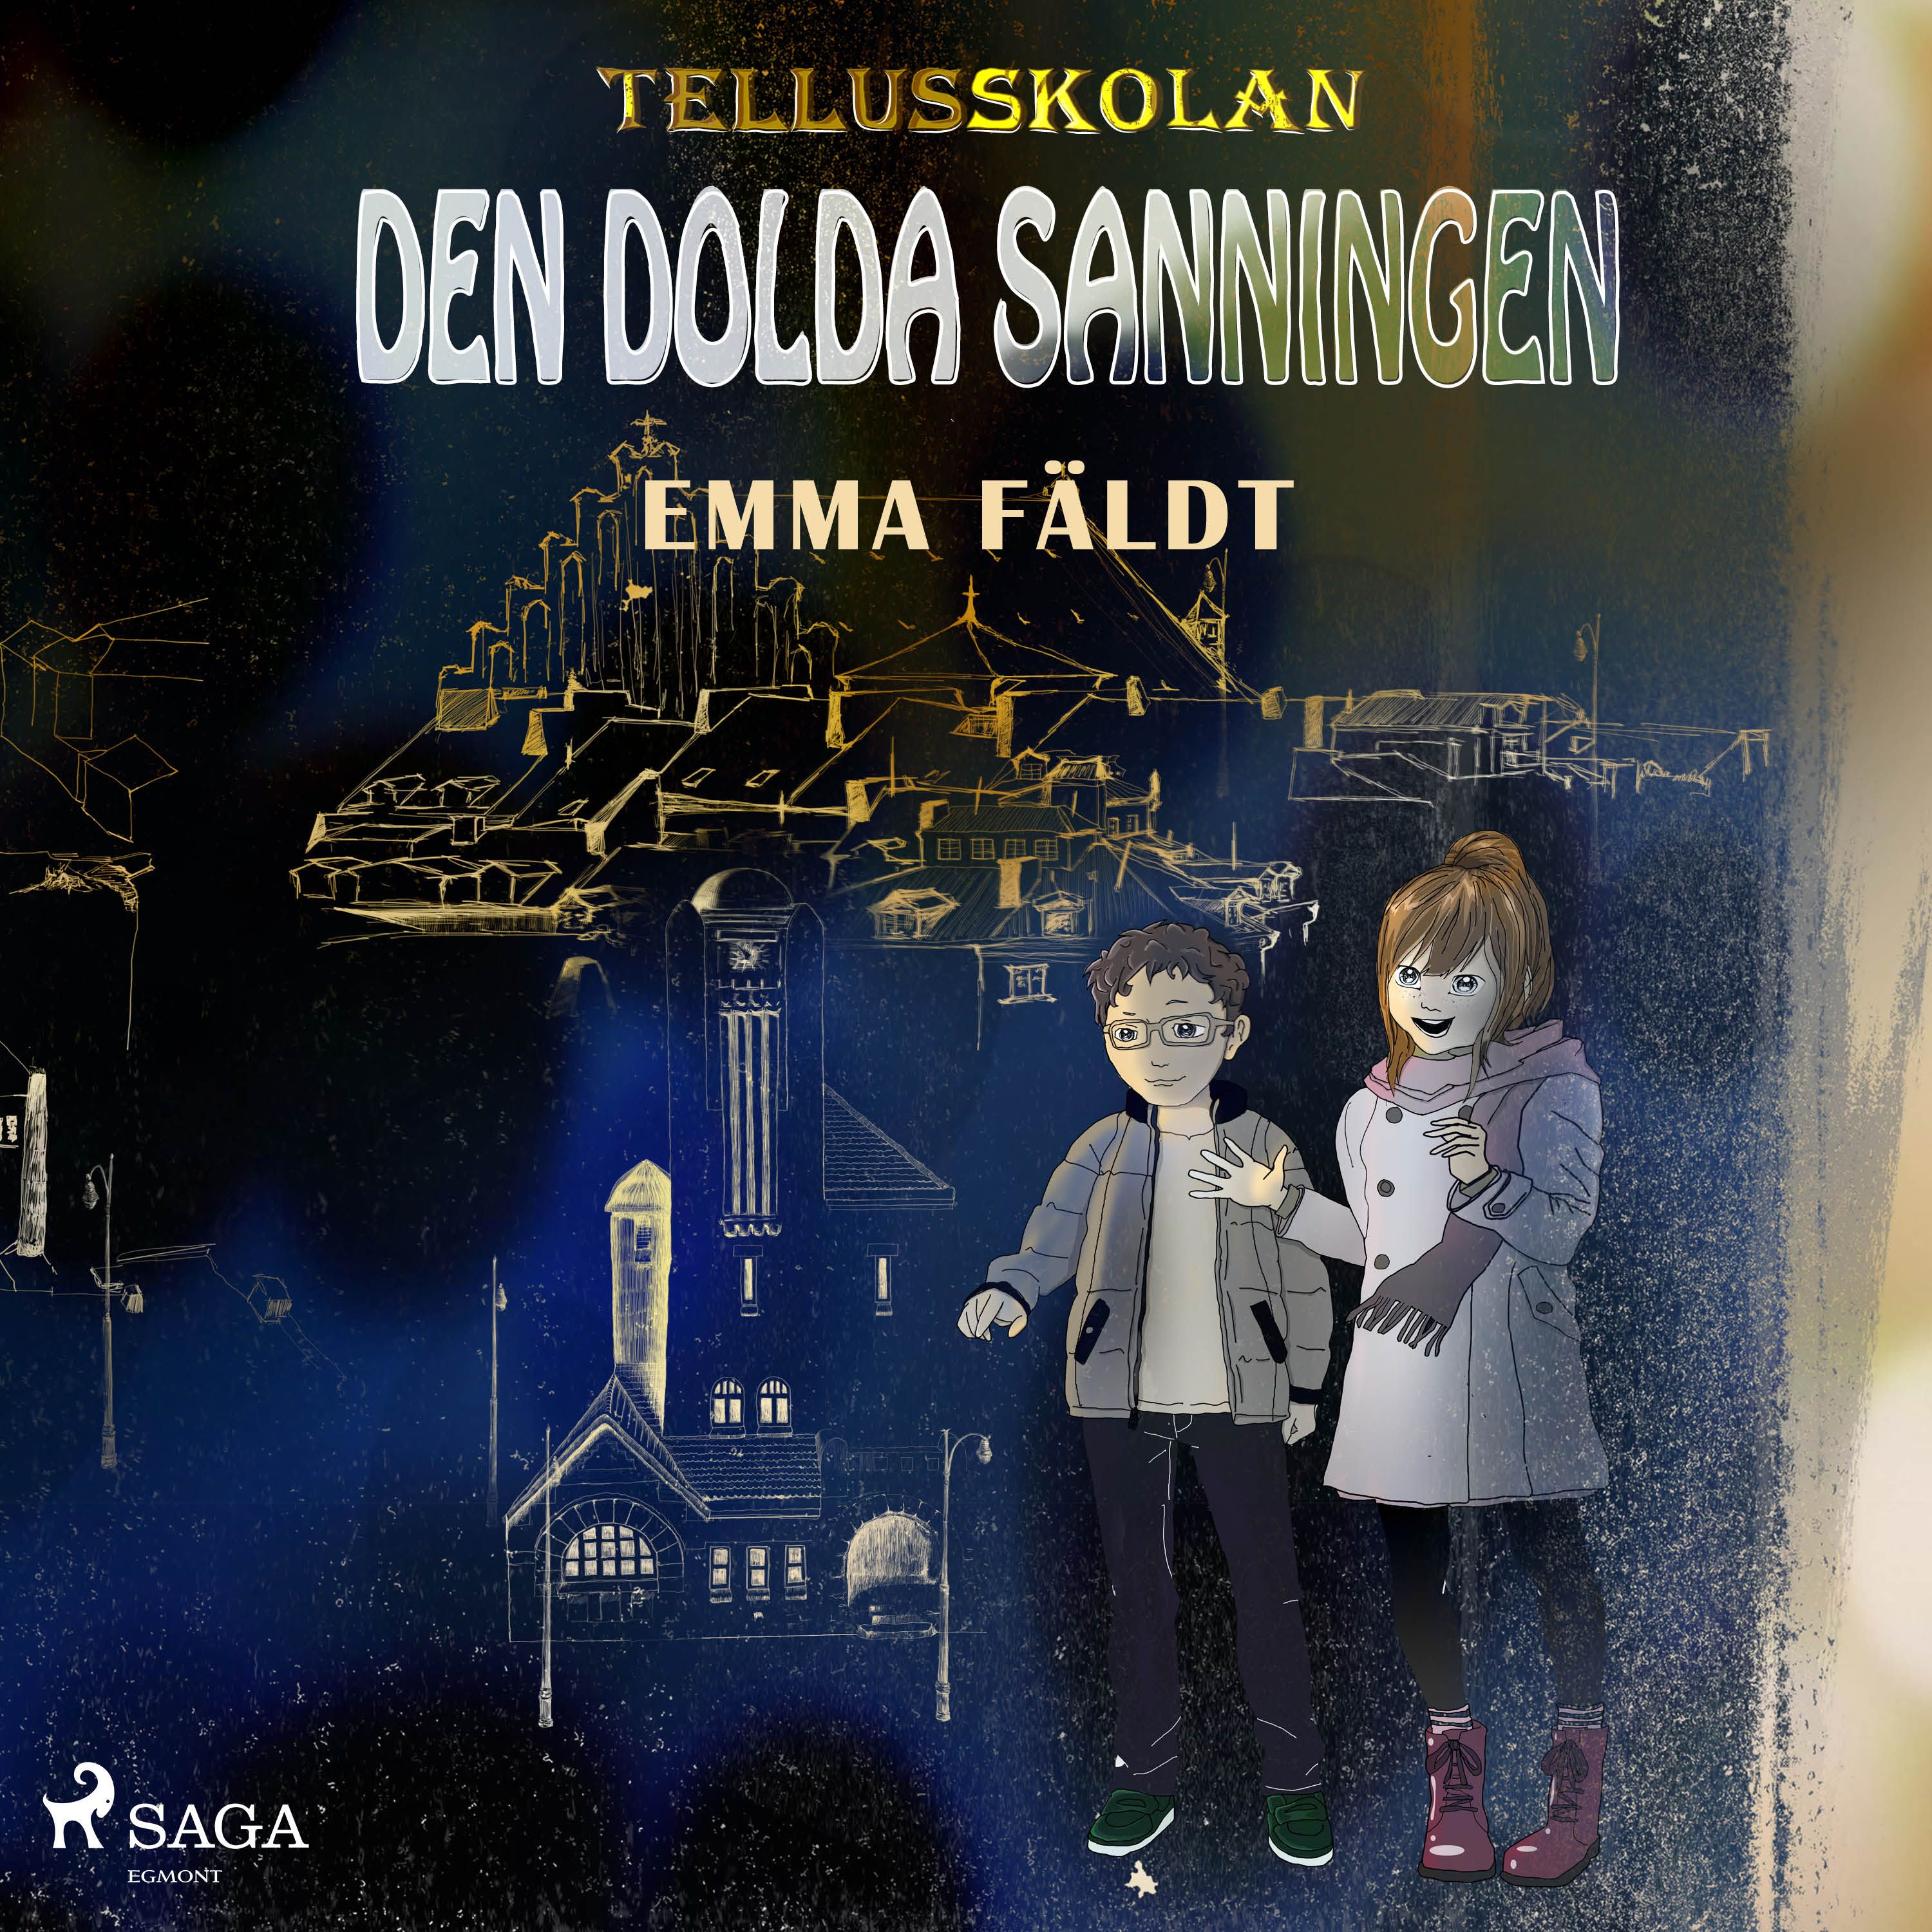 Tellusskolan: den dolda sanningen, audiobook by Emma Fäldt